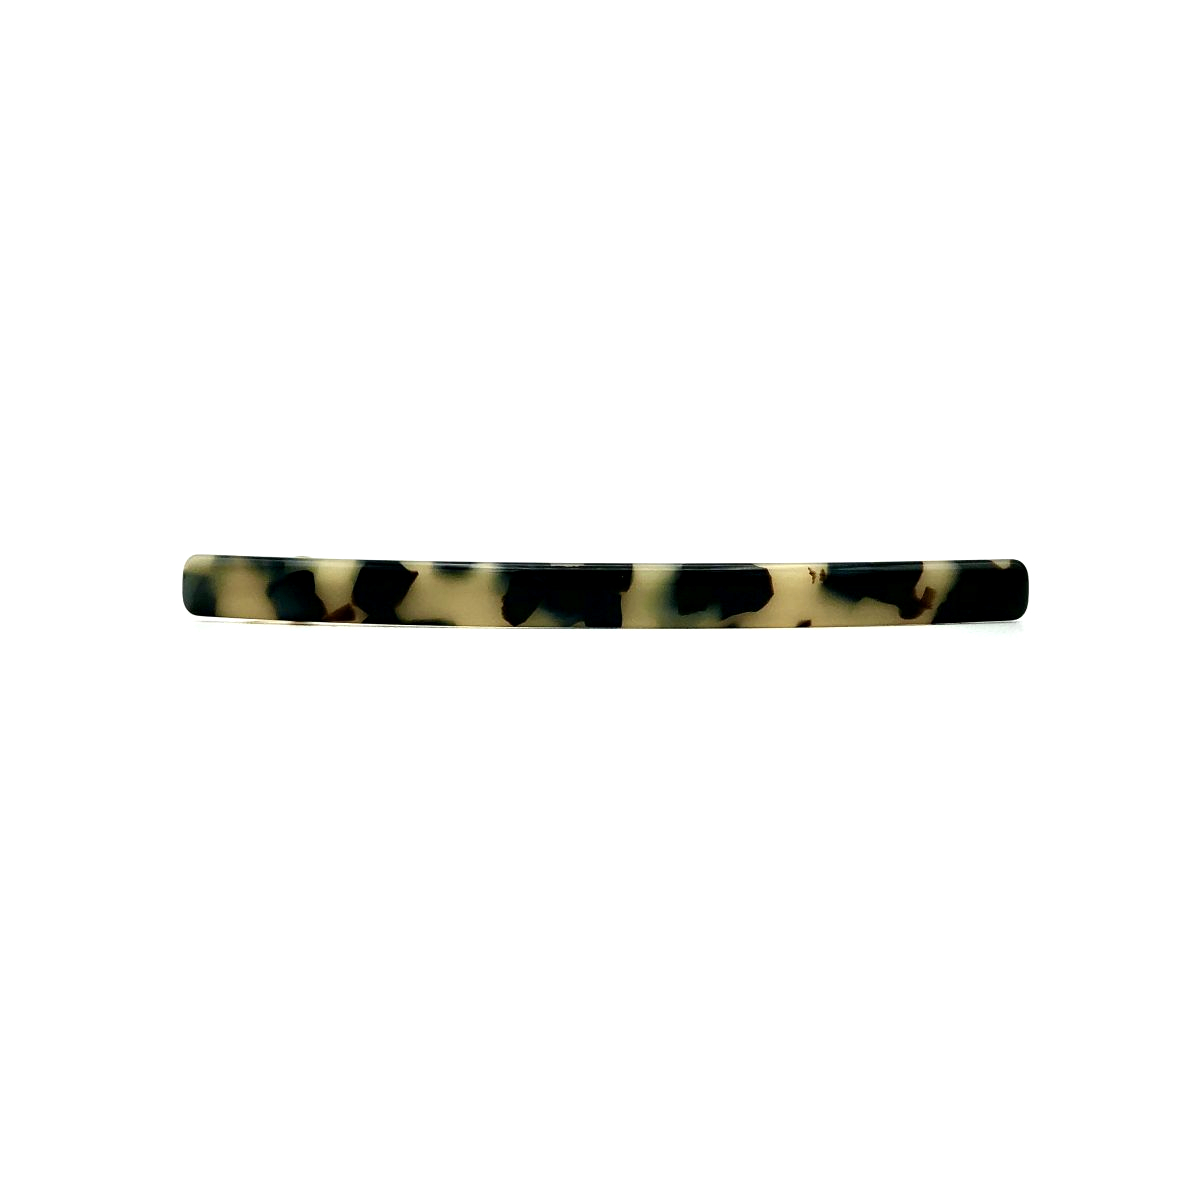 Haarspange schwarz/beige - lang, flach - 10,3 cm